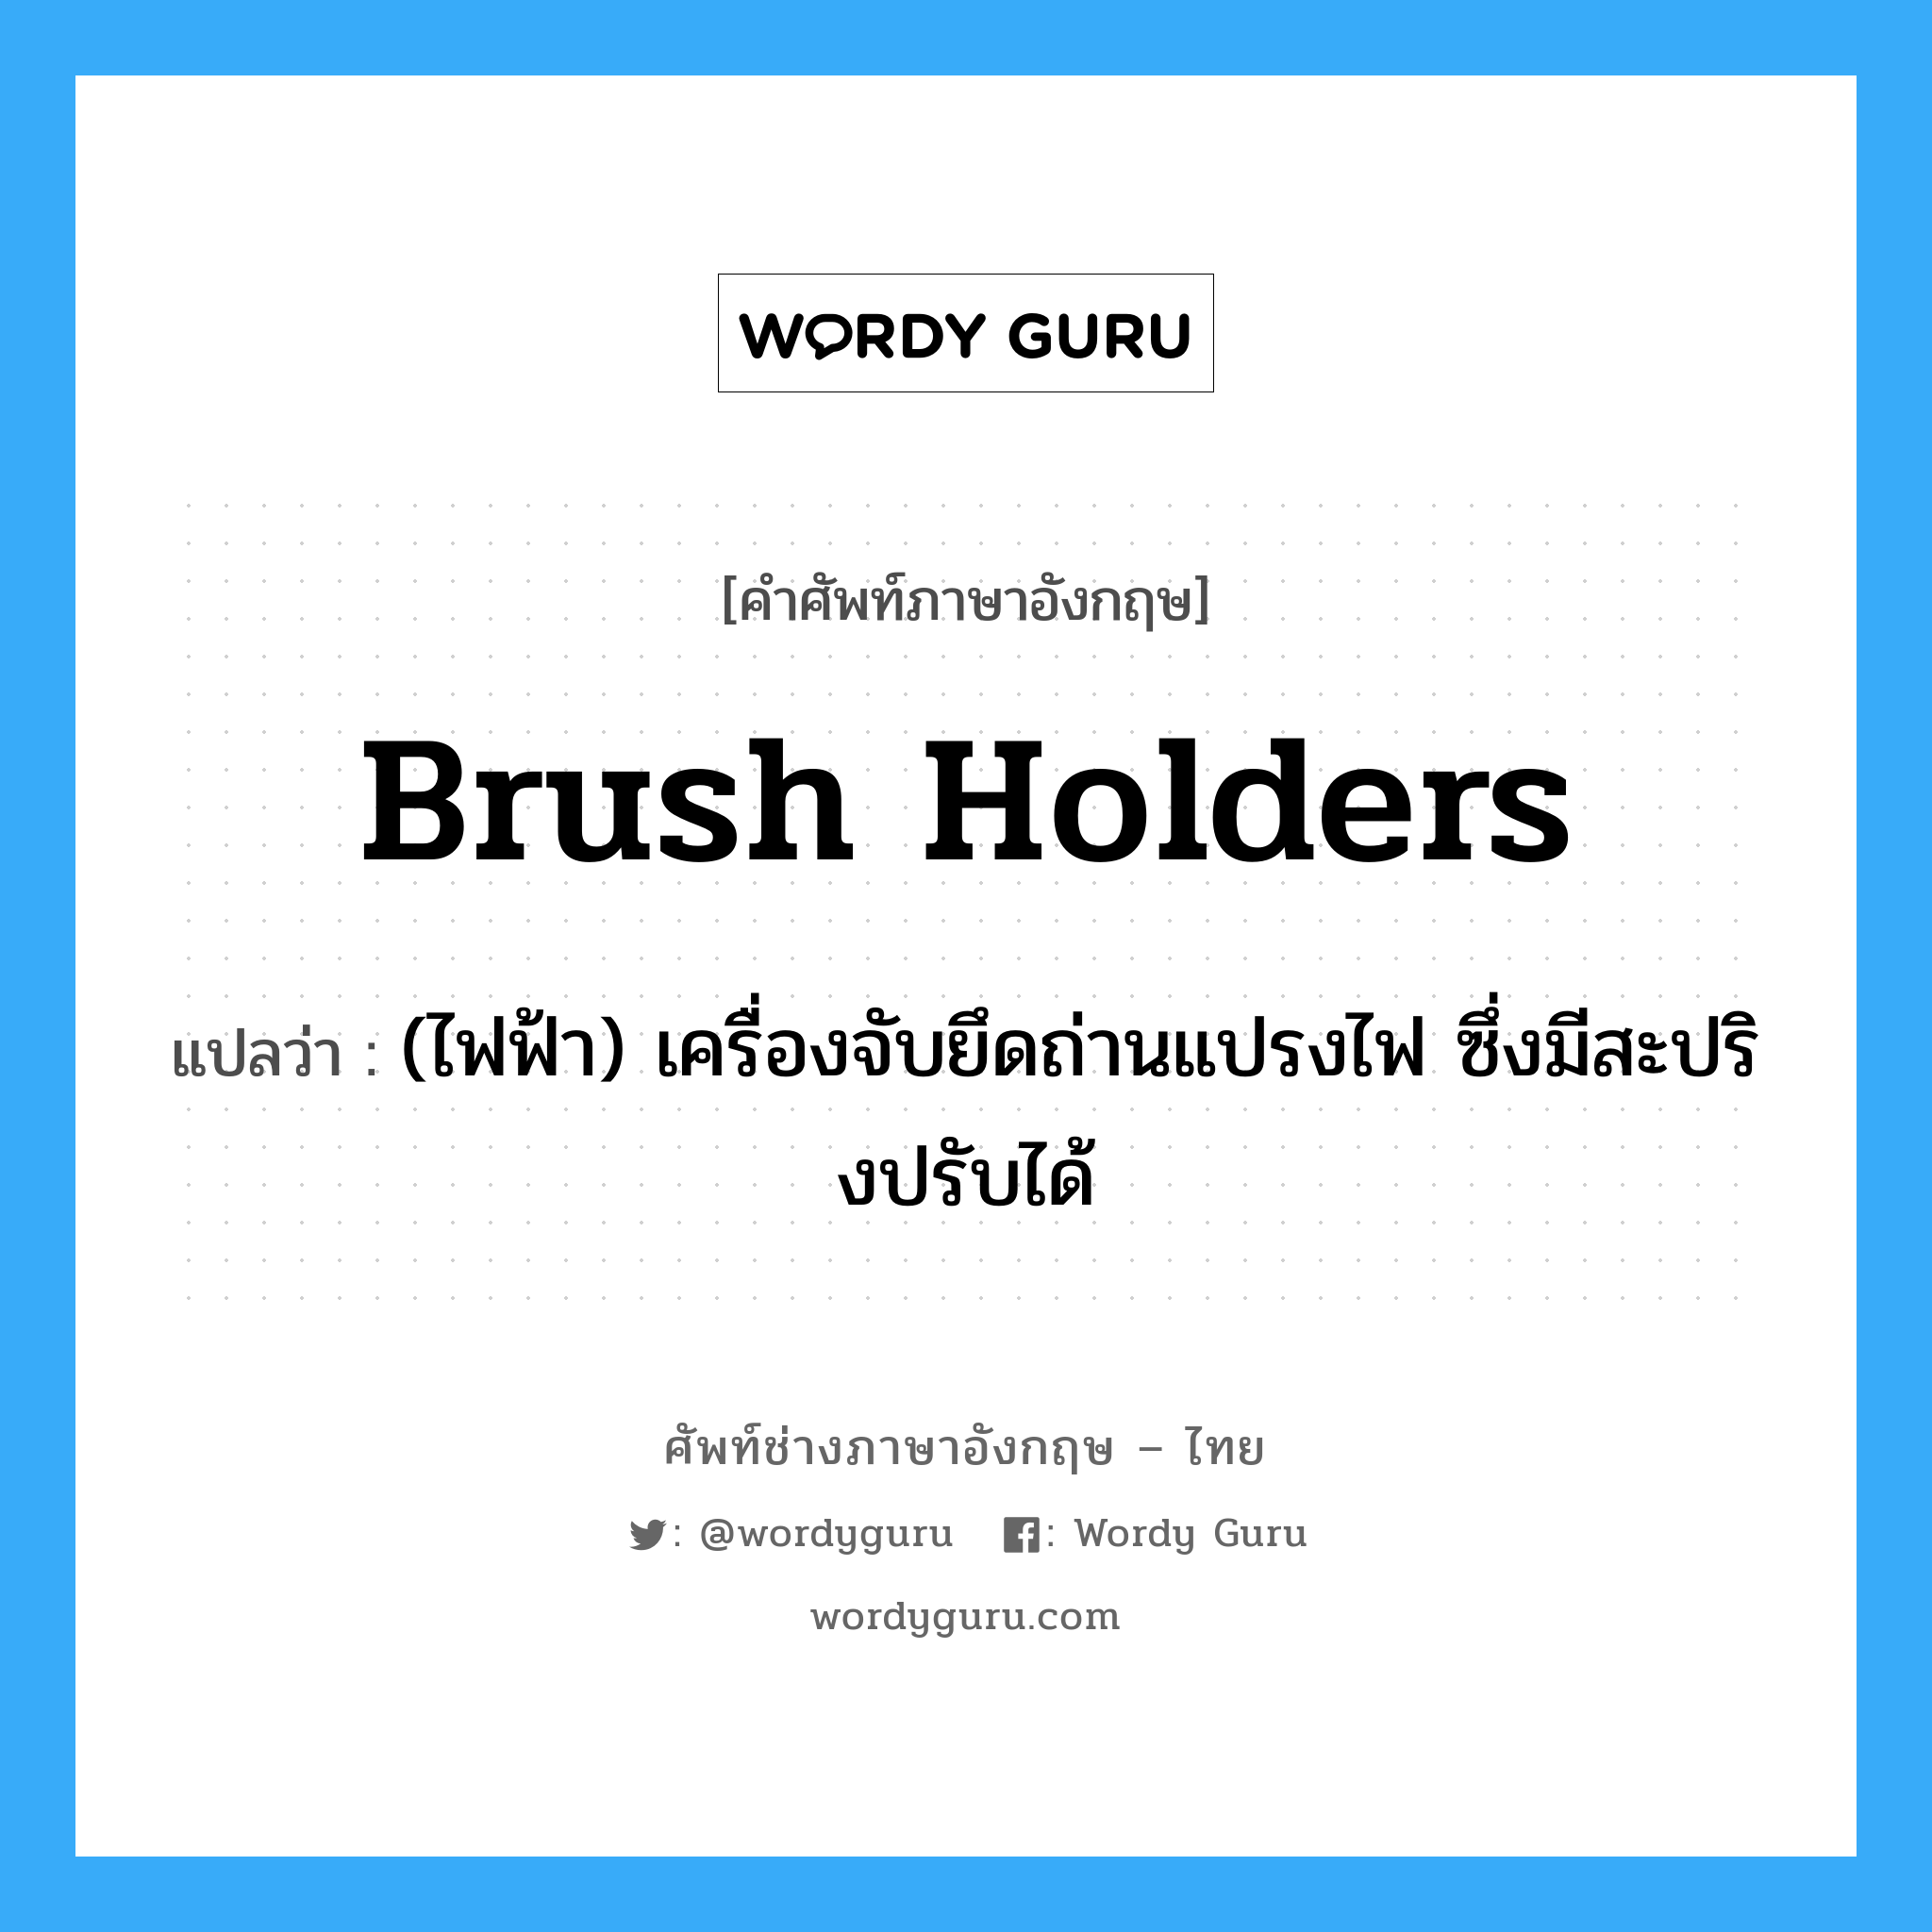 brush holders แปลว่า?, คำศัพท์ช่างภาษาอังกฤษ - ไทย brush holders คำศัพท์ภาษาอังกฤษ brush holders แปลว่า (ไฟฟ้า) เครื่องจับยึดถ่านแปรงไฟ ซึ่งมีสะปริงปรับได้